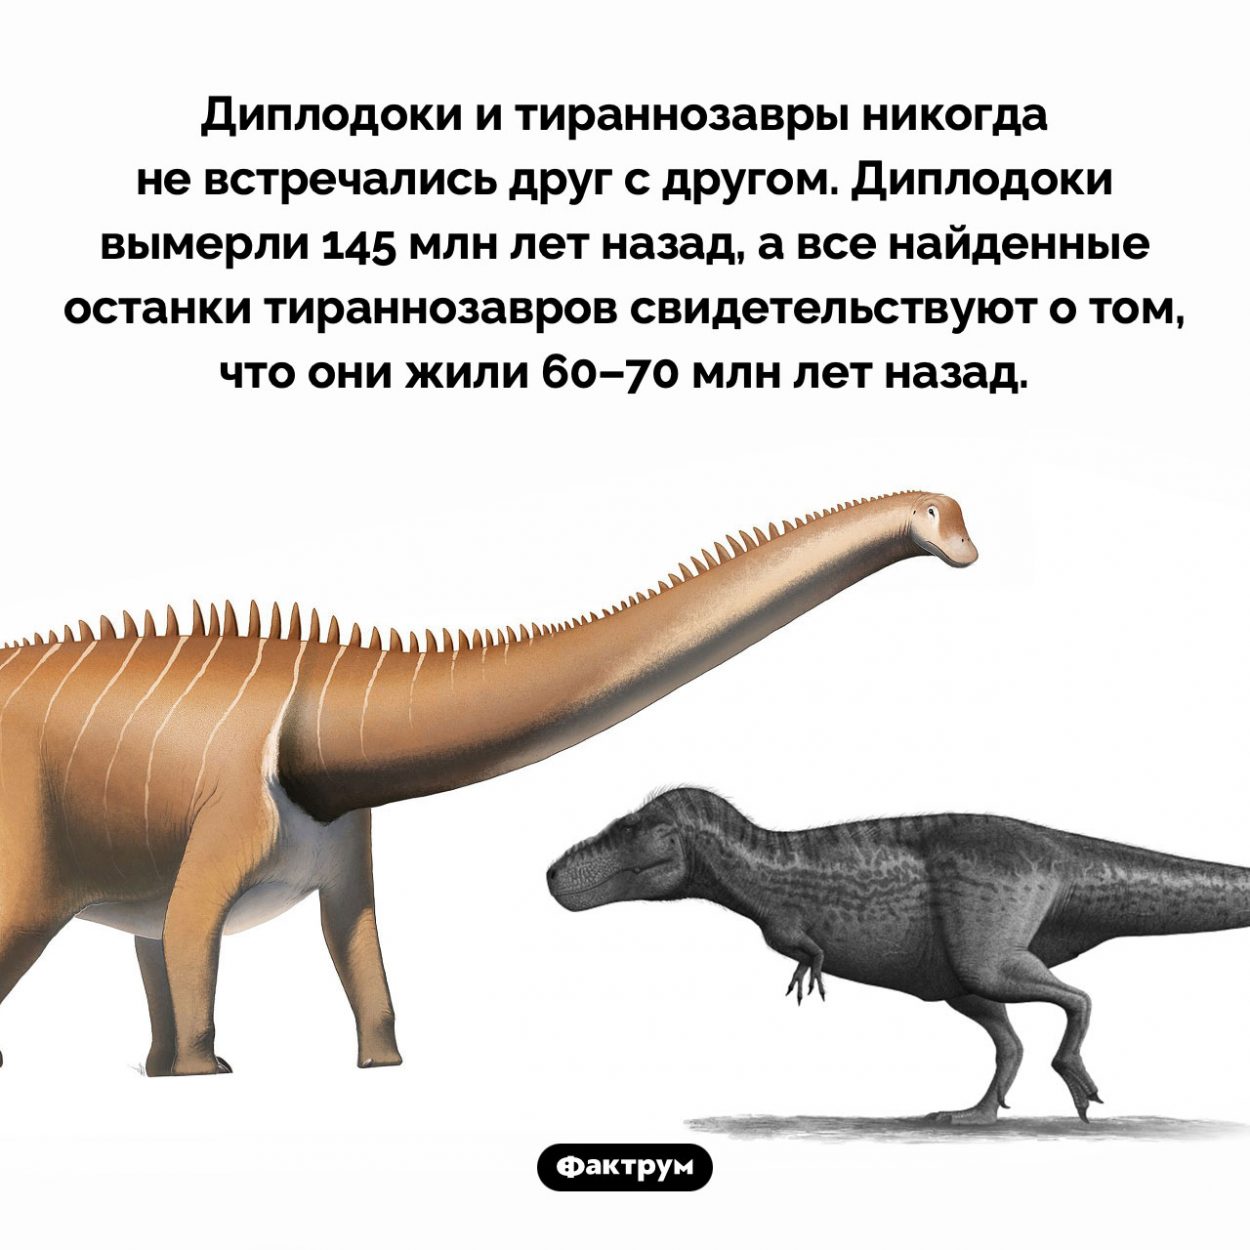 Диплодоки вымерли за 70 млн лет до тираннозавров. Диплодоки и тираннозавры никогда не встречались друг с другом. Диплодоки вымерли 145 млн лет назад, а все найденные останки тираннозавров свидетельствуют о том, что они жили 60–70 млн лет назад.